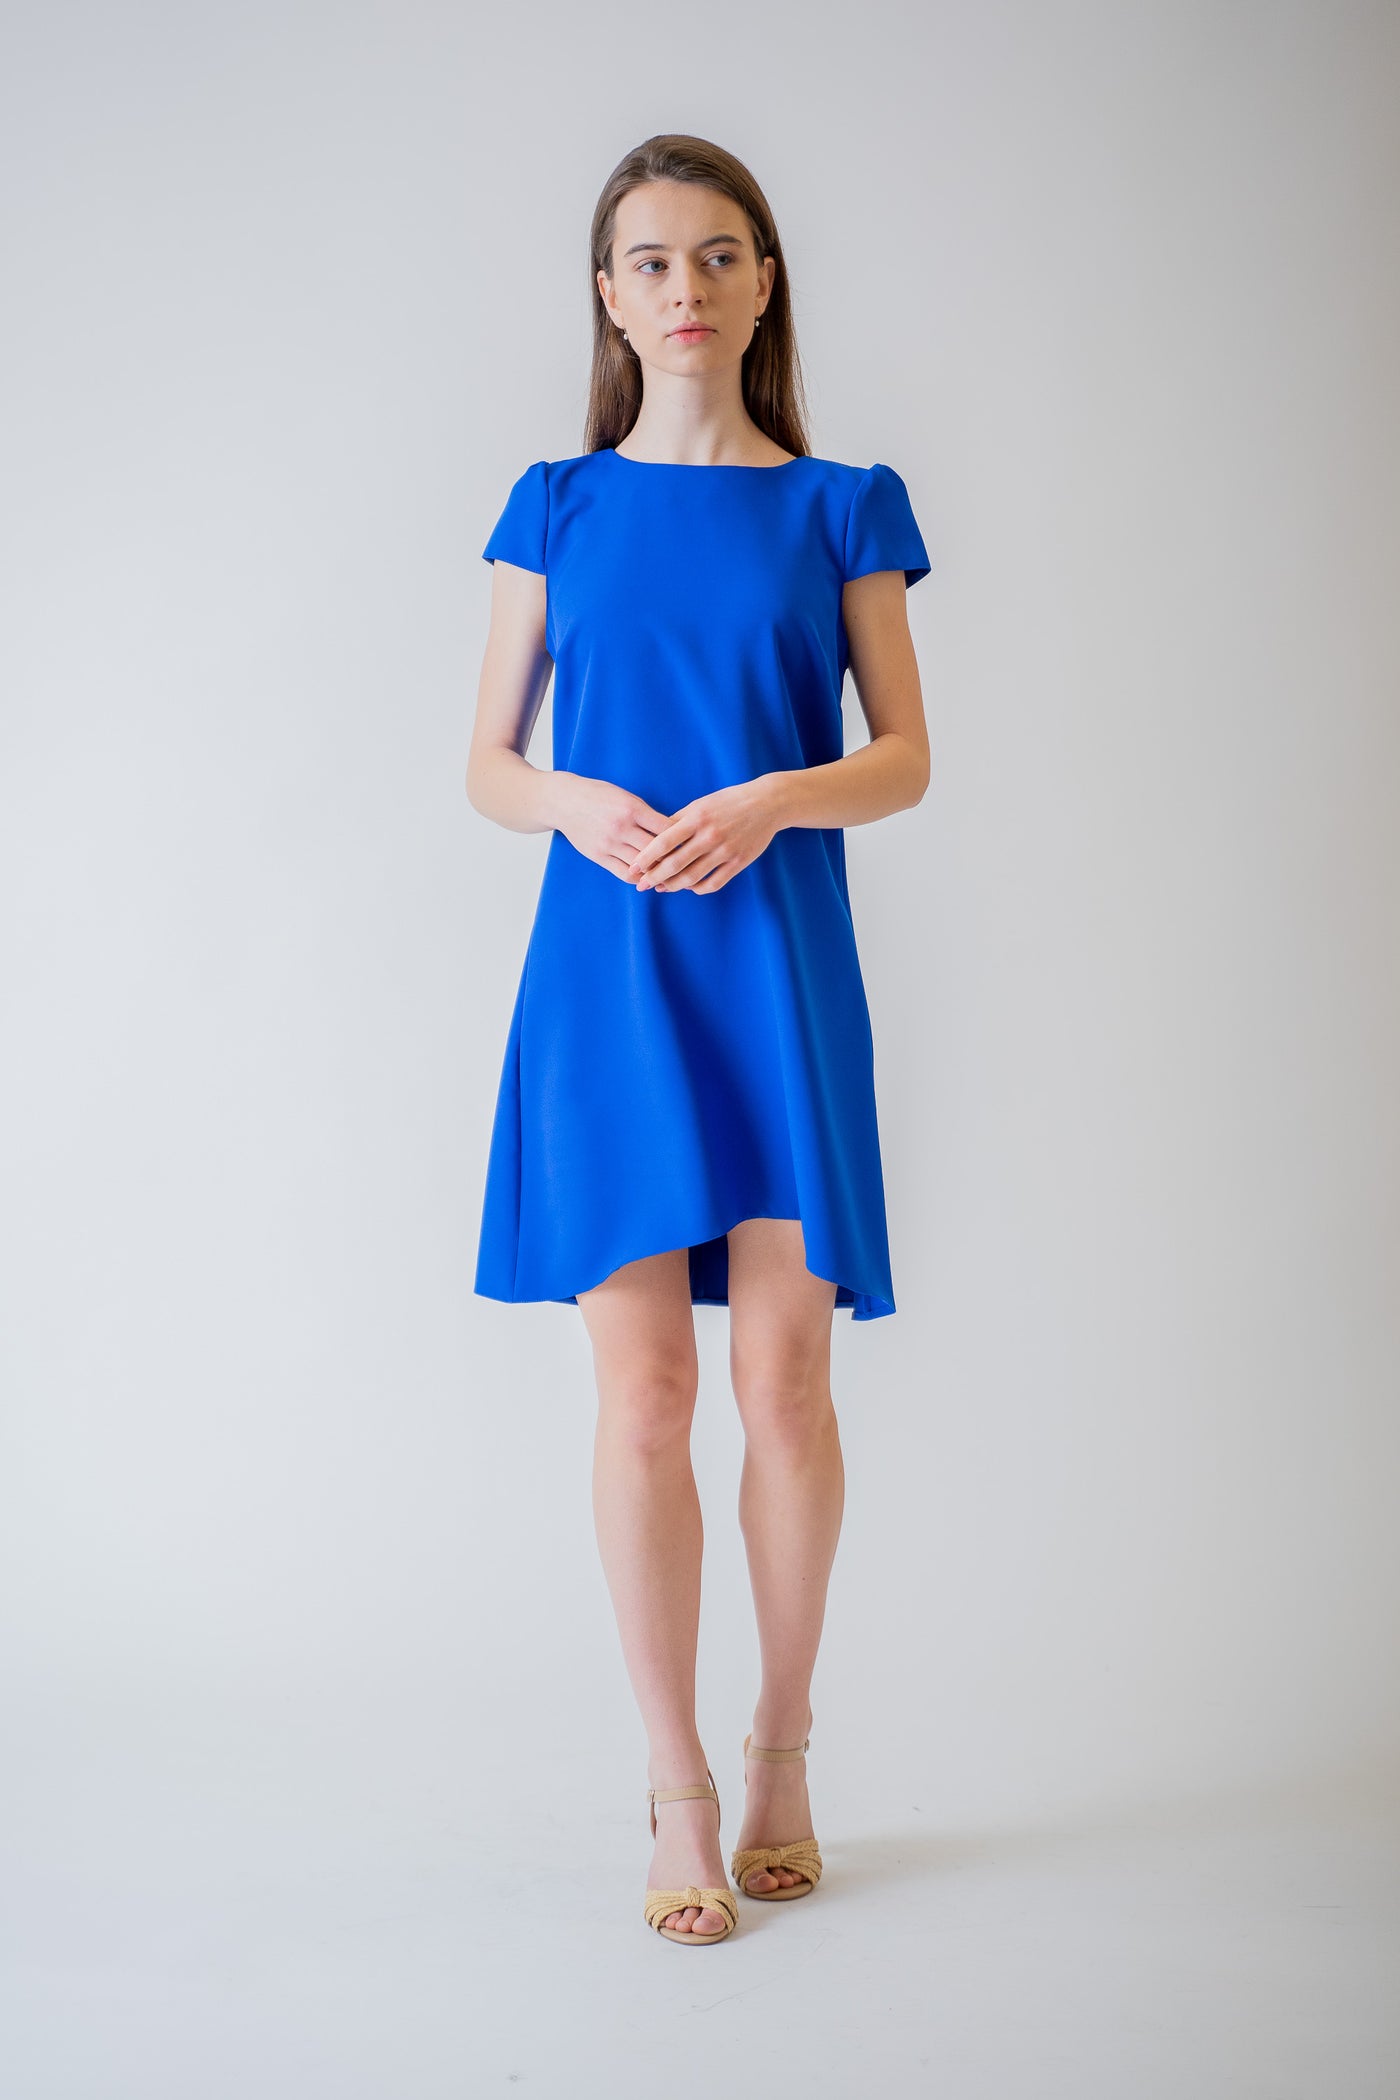 Krátke modré šaty - spoločenské šaty